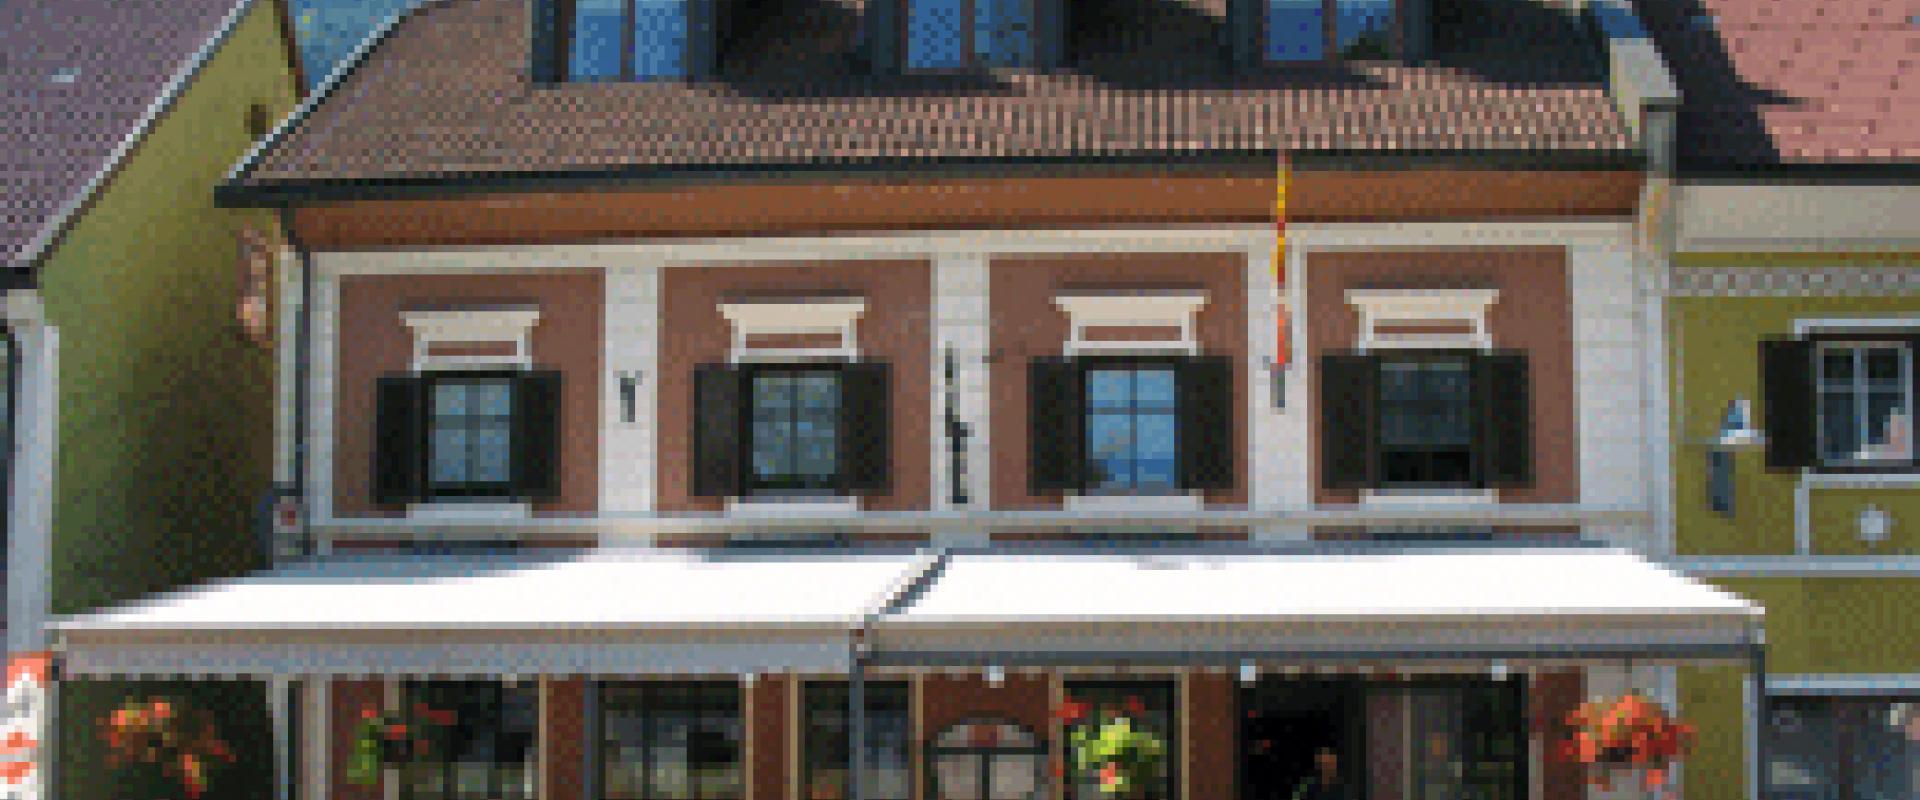 15045 Motorrad Hotel Zum Goldenen Rössl in Kärnten.jpg